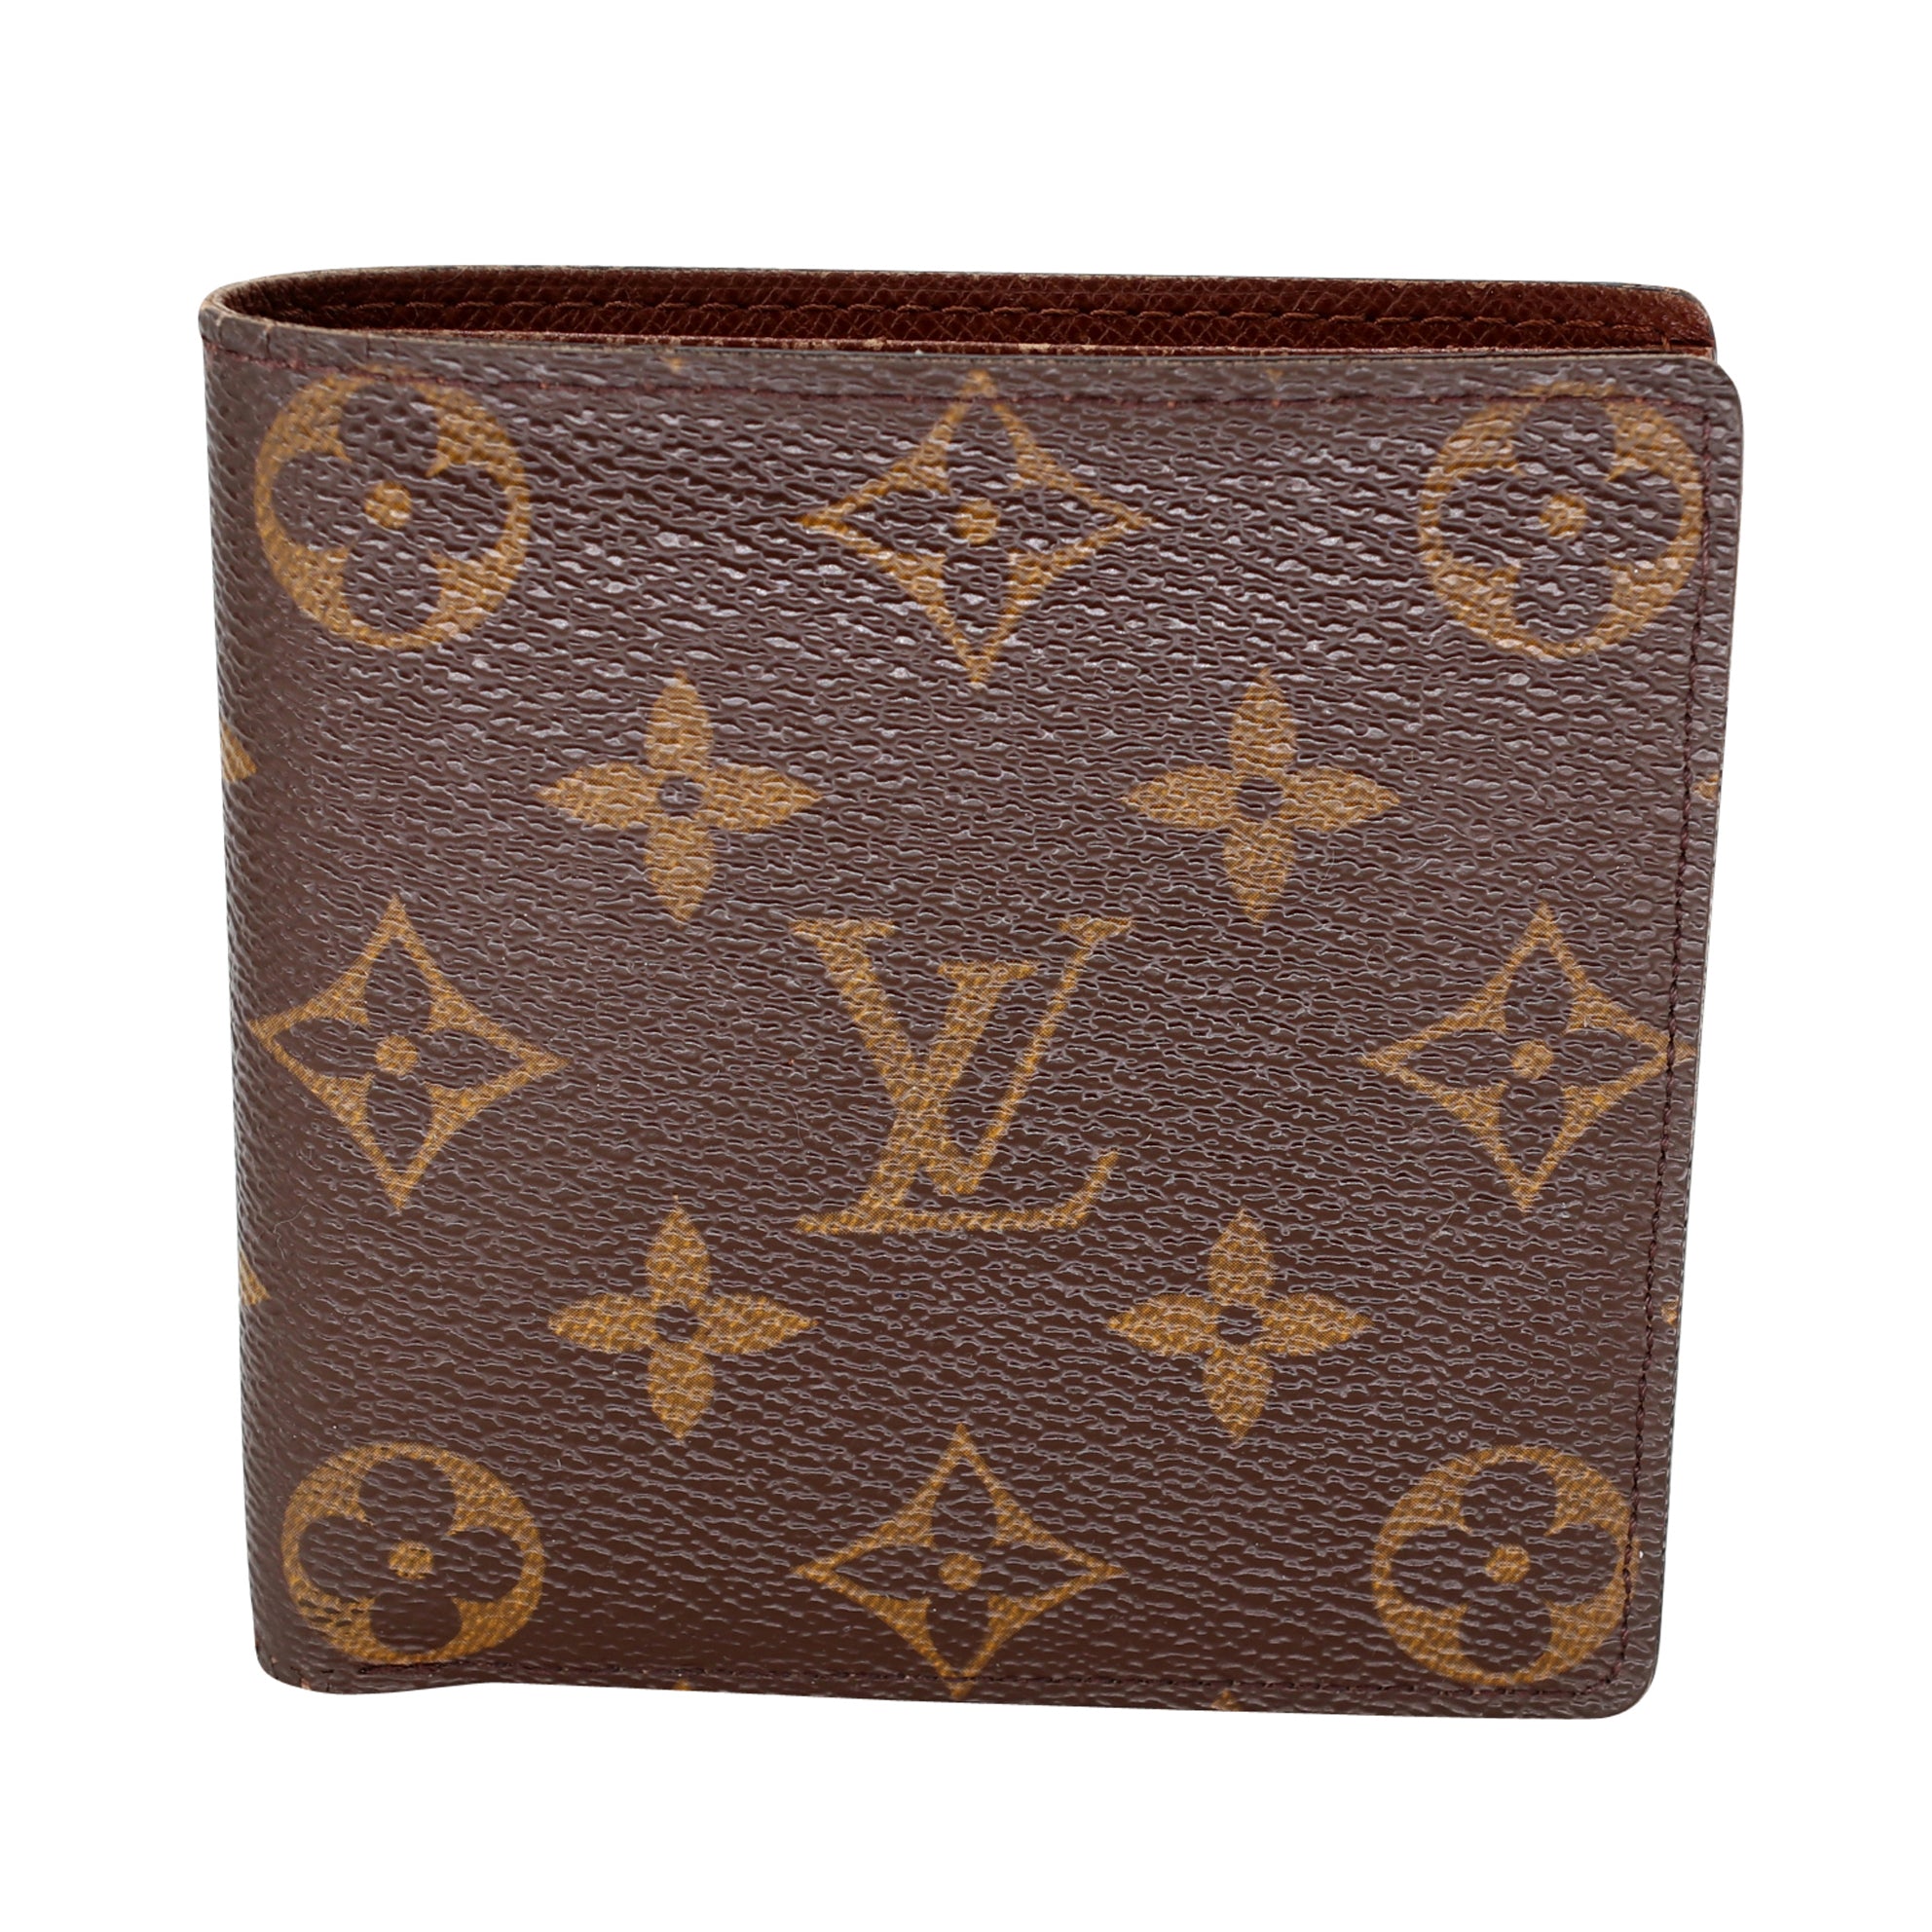 LOUIS VUITTON Louis Vuitton Portefeuille Marie Rulon Coquelicot M60727  Men's Monogram Canvas Epi Leather Bifold Wallet